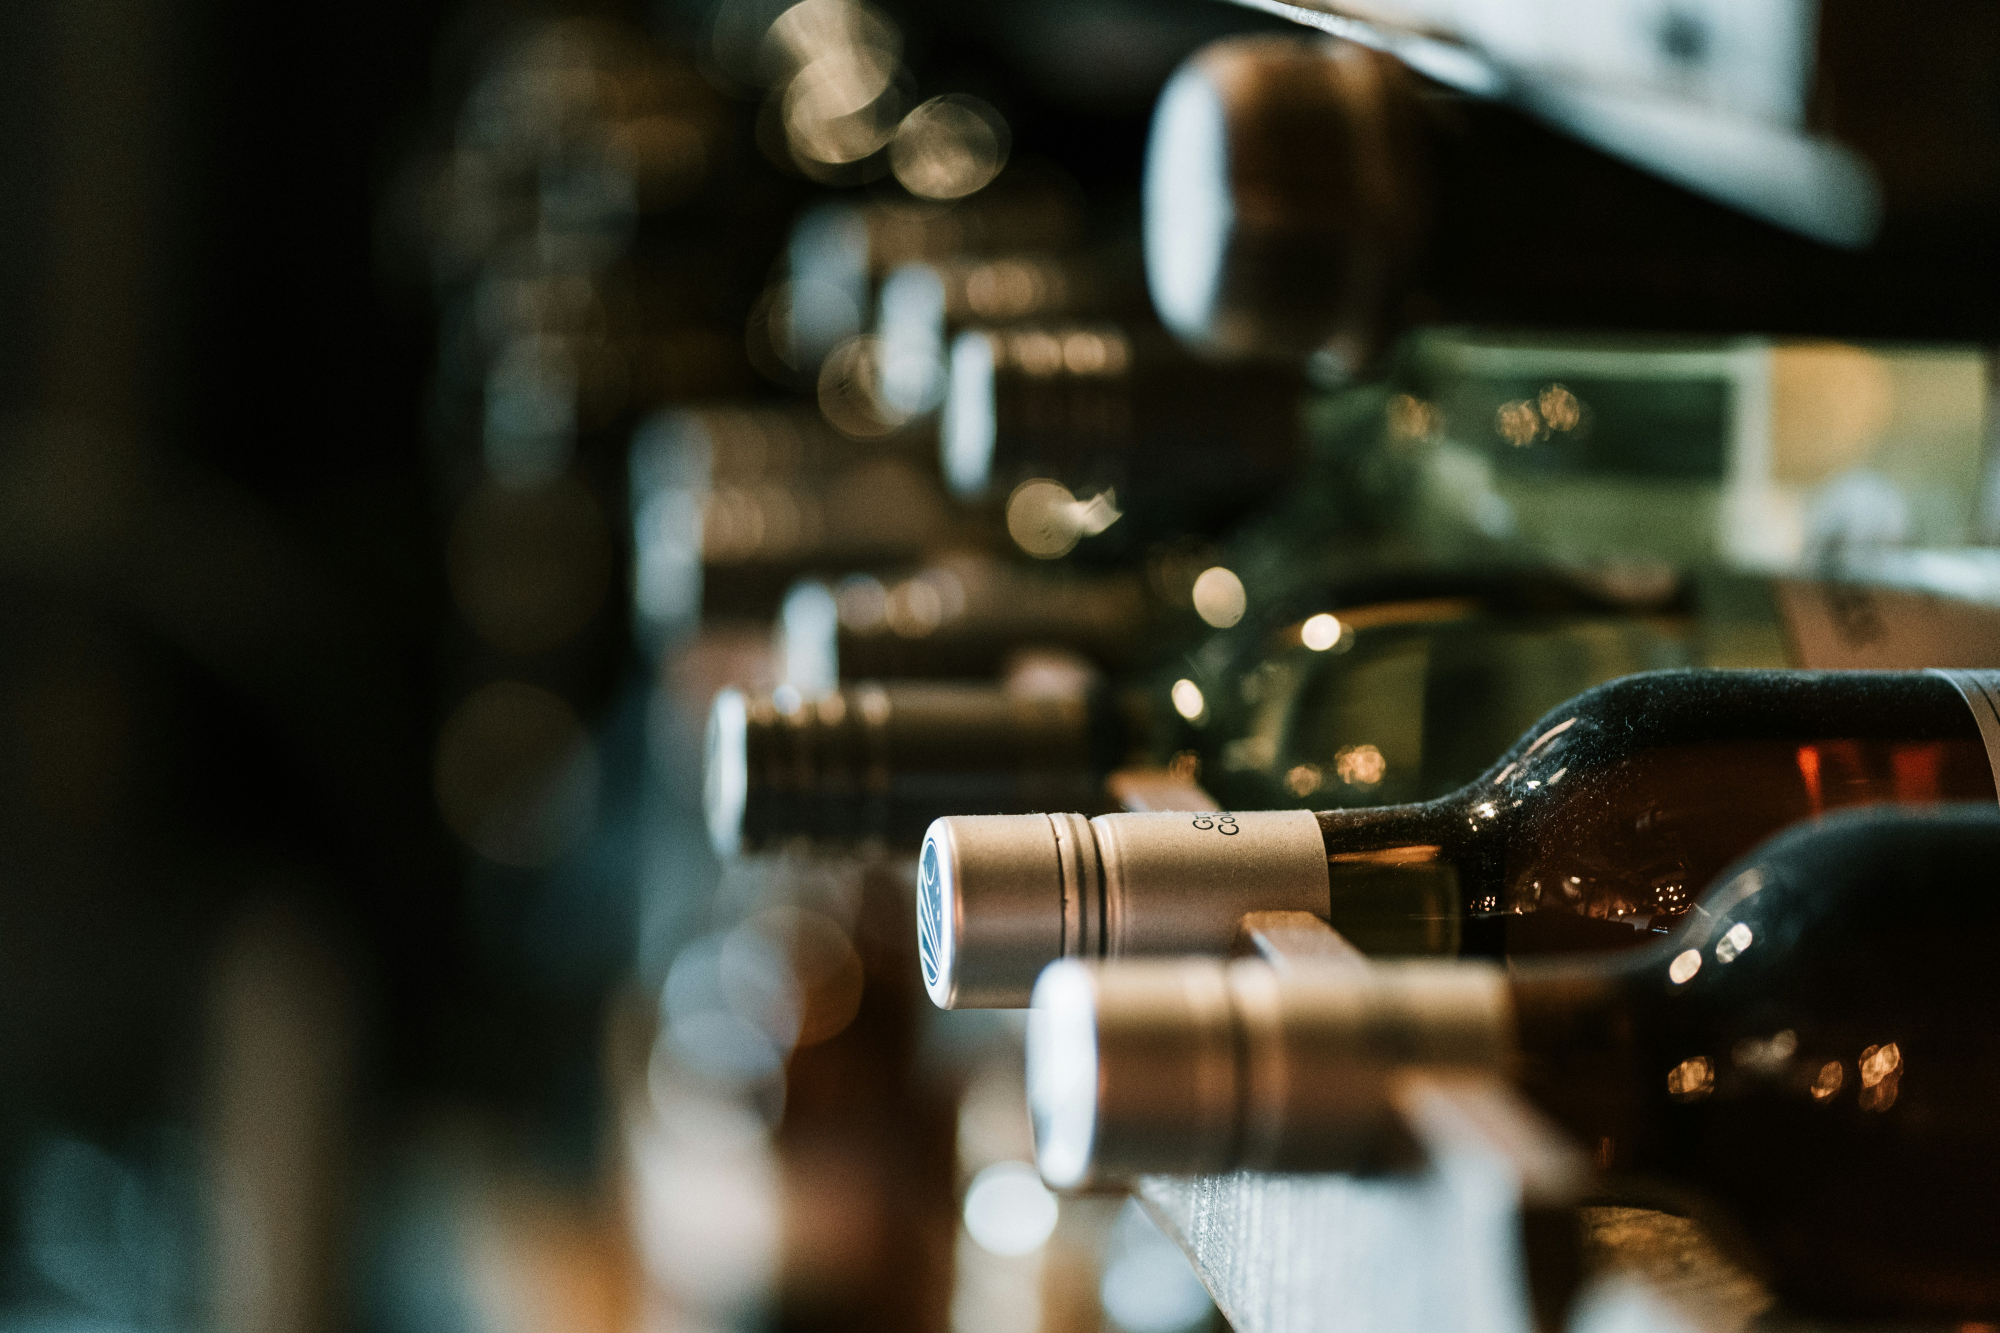 découvrez une sélection de vins rouges de qualité provenant des meilleurs vignobles, offrant des arômes riches et une expérience gustative inoubliable.